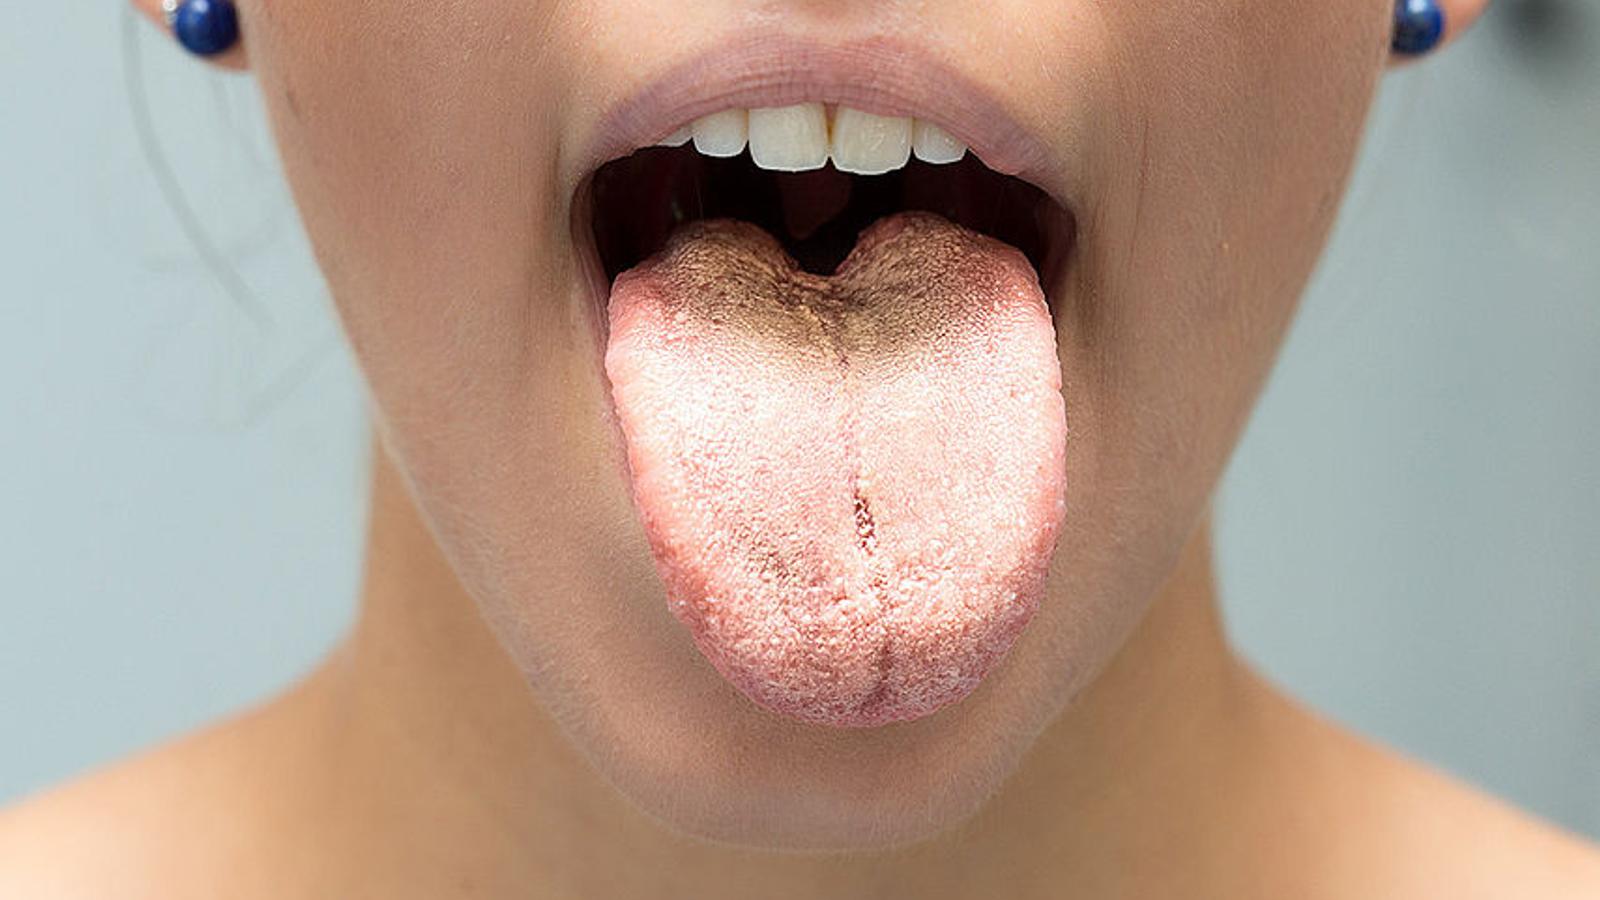 Mädchen mit Mundsoor zeigt ihre Zunge